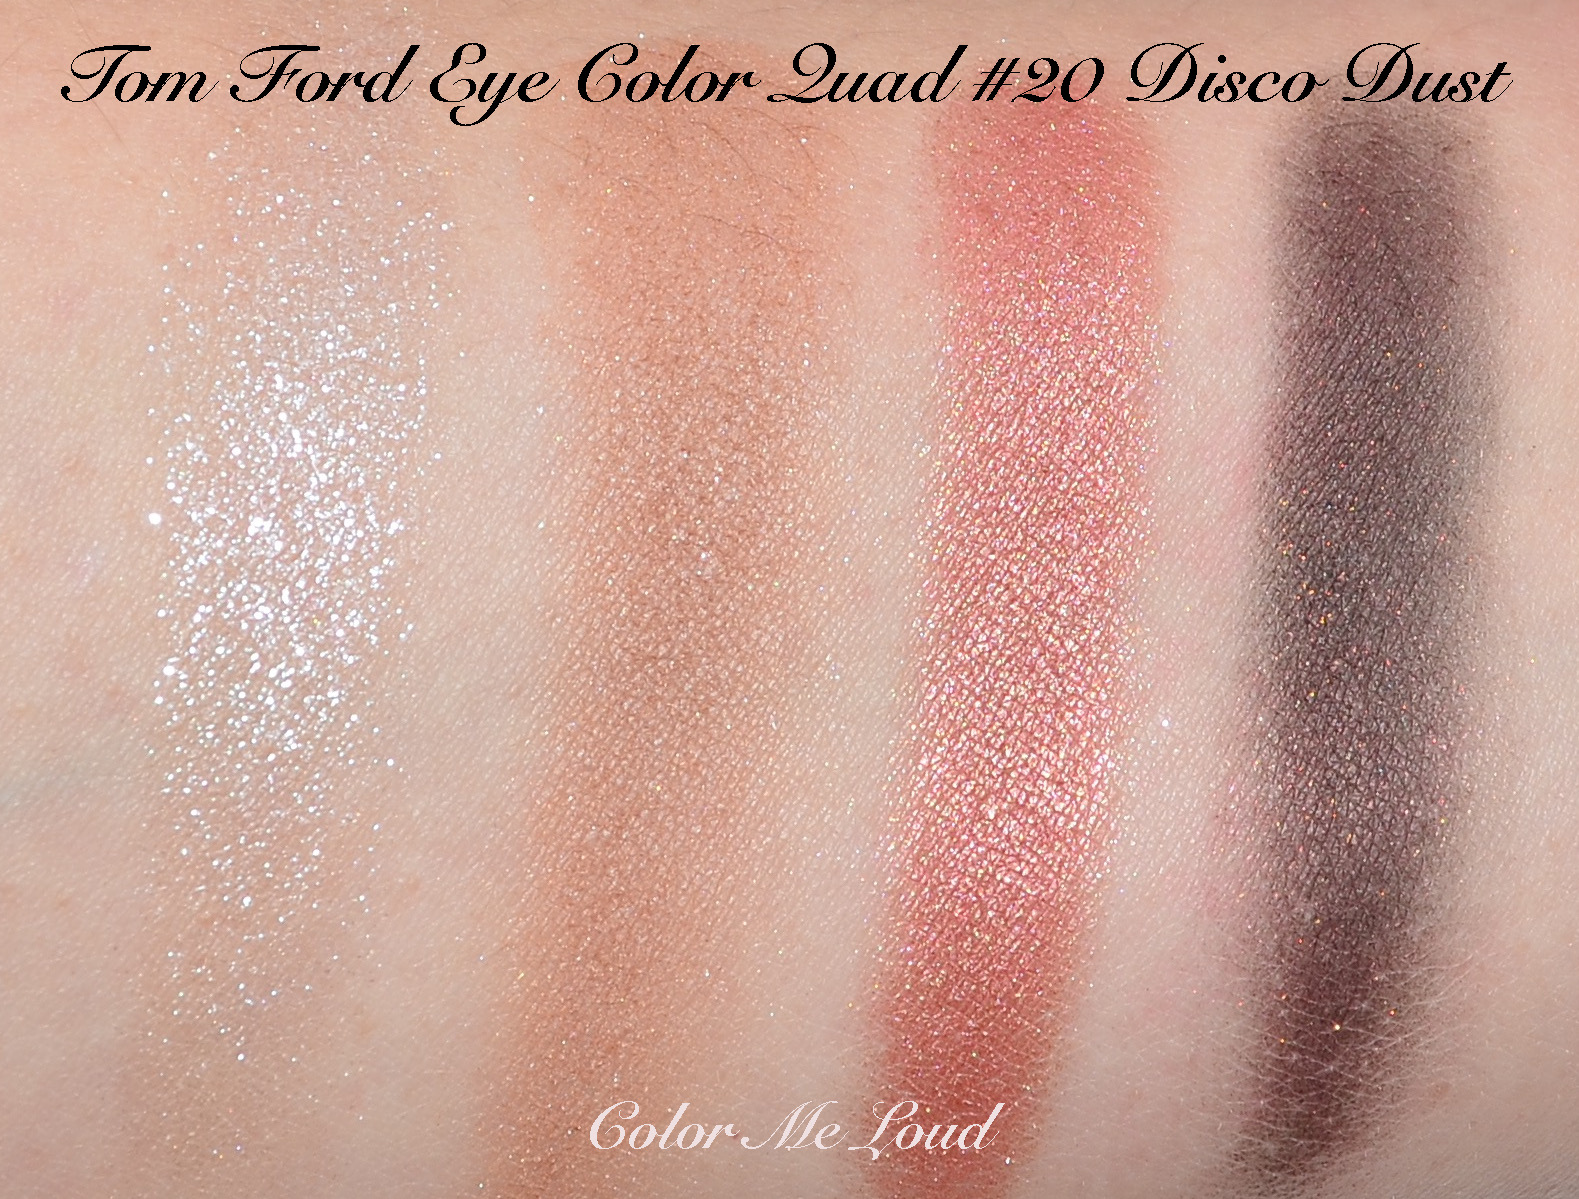 Tom Ford Eye Color Quad #20 Dust, Review, Comparison & FOTD | Color Me Loud